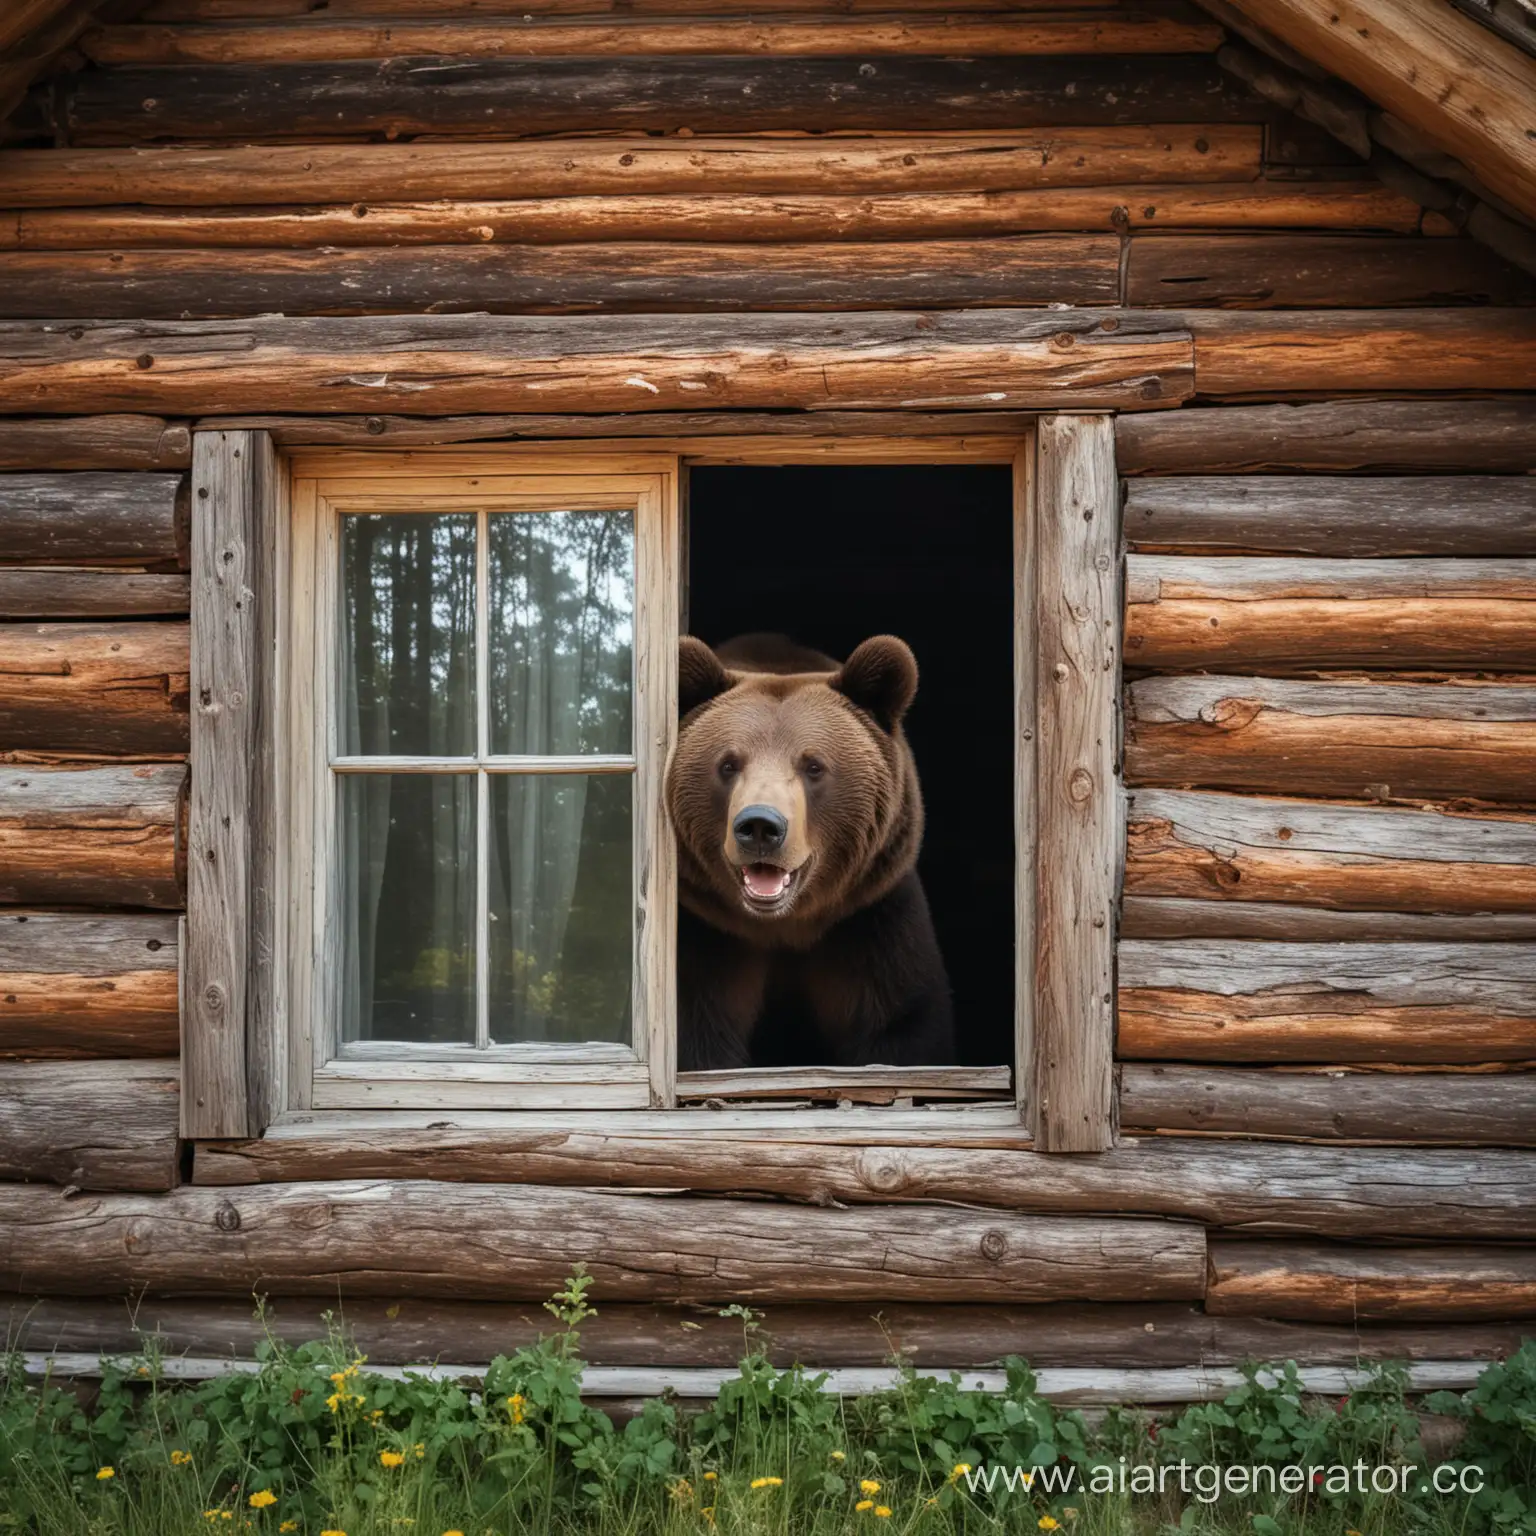 Старый русский терем средних размеров в лесу из окна которого изнутри высовывается радостный медведь